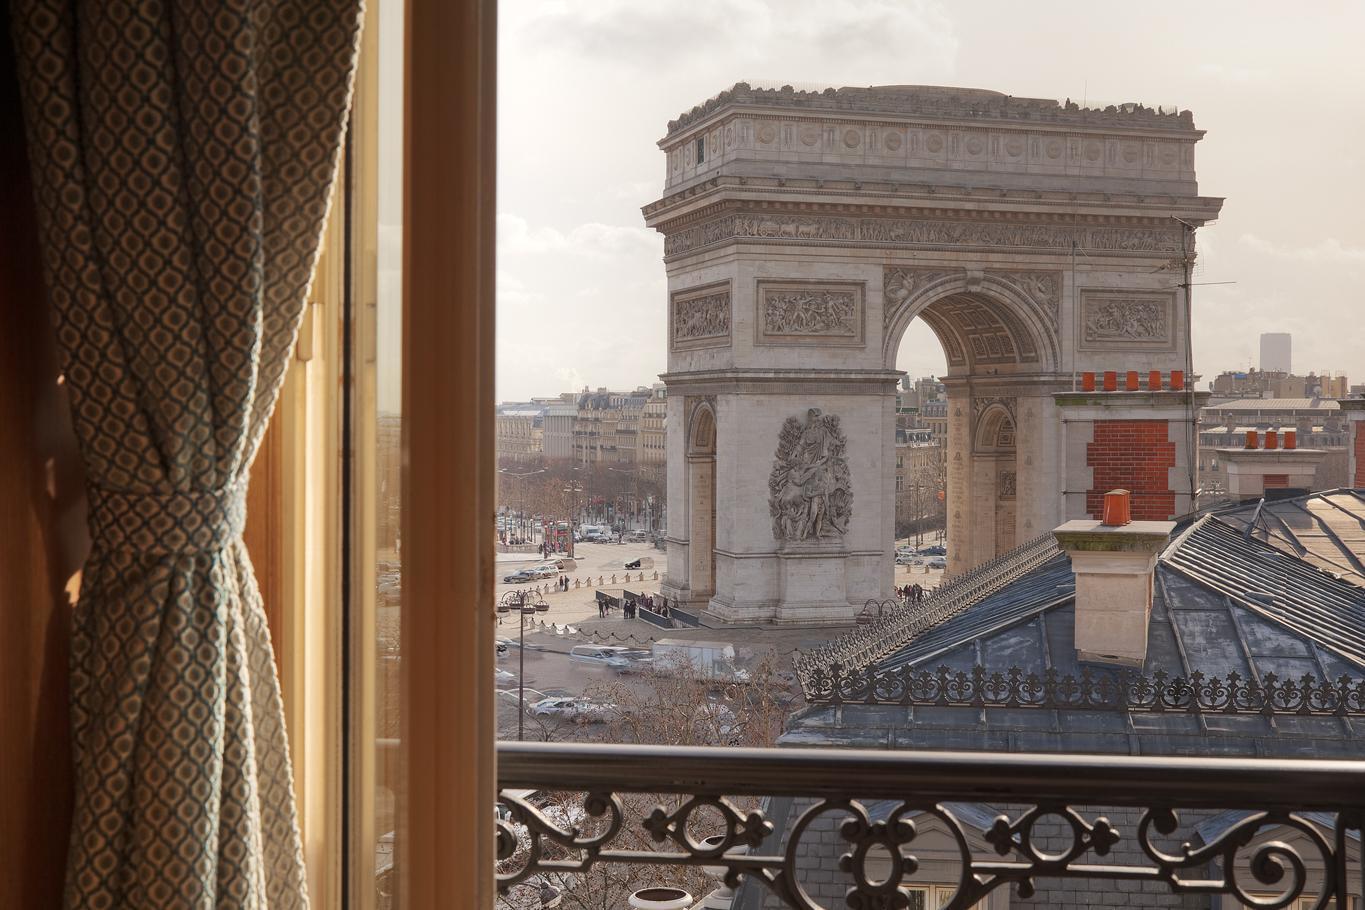 Splendid Etoile Hotel Paris Ruang foto